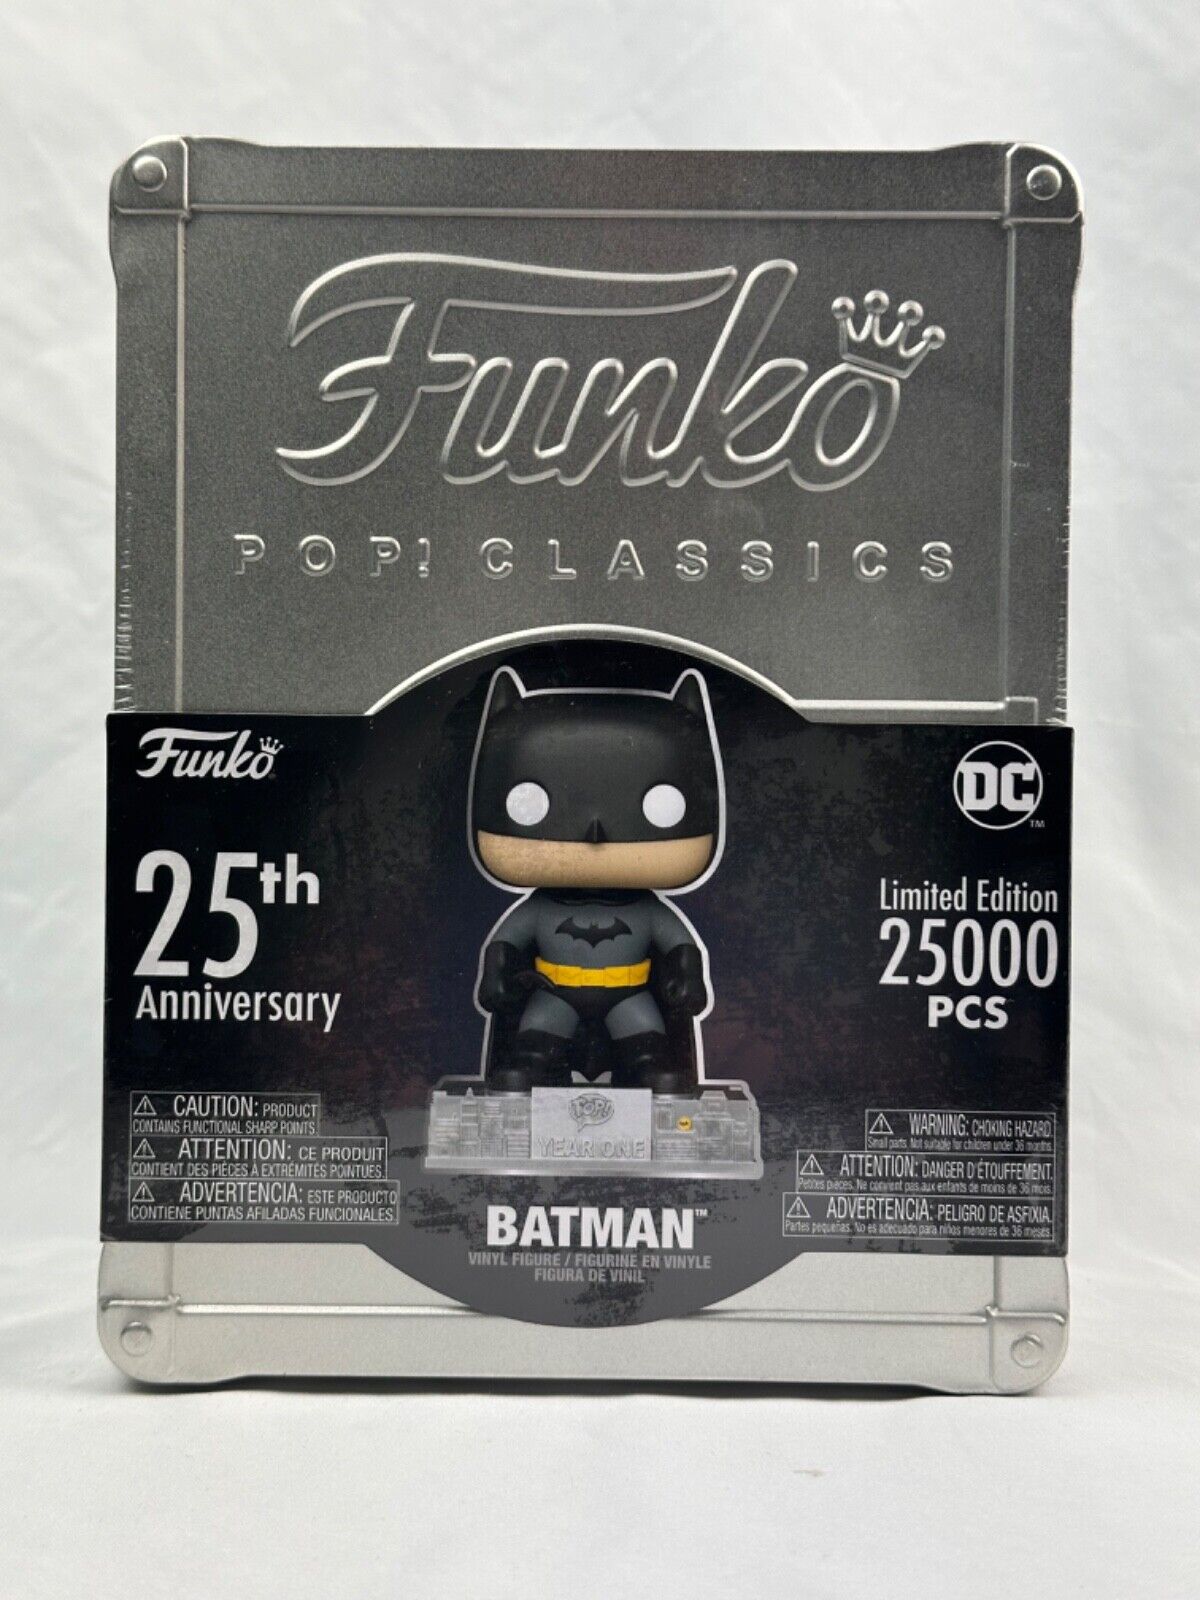 Funko Pop Classic Batman Funko 25th Anniversary DC Comics Limited Edition